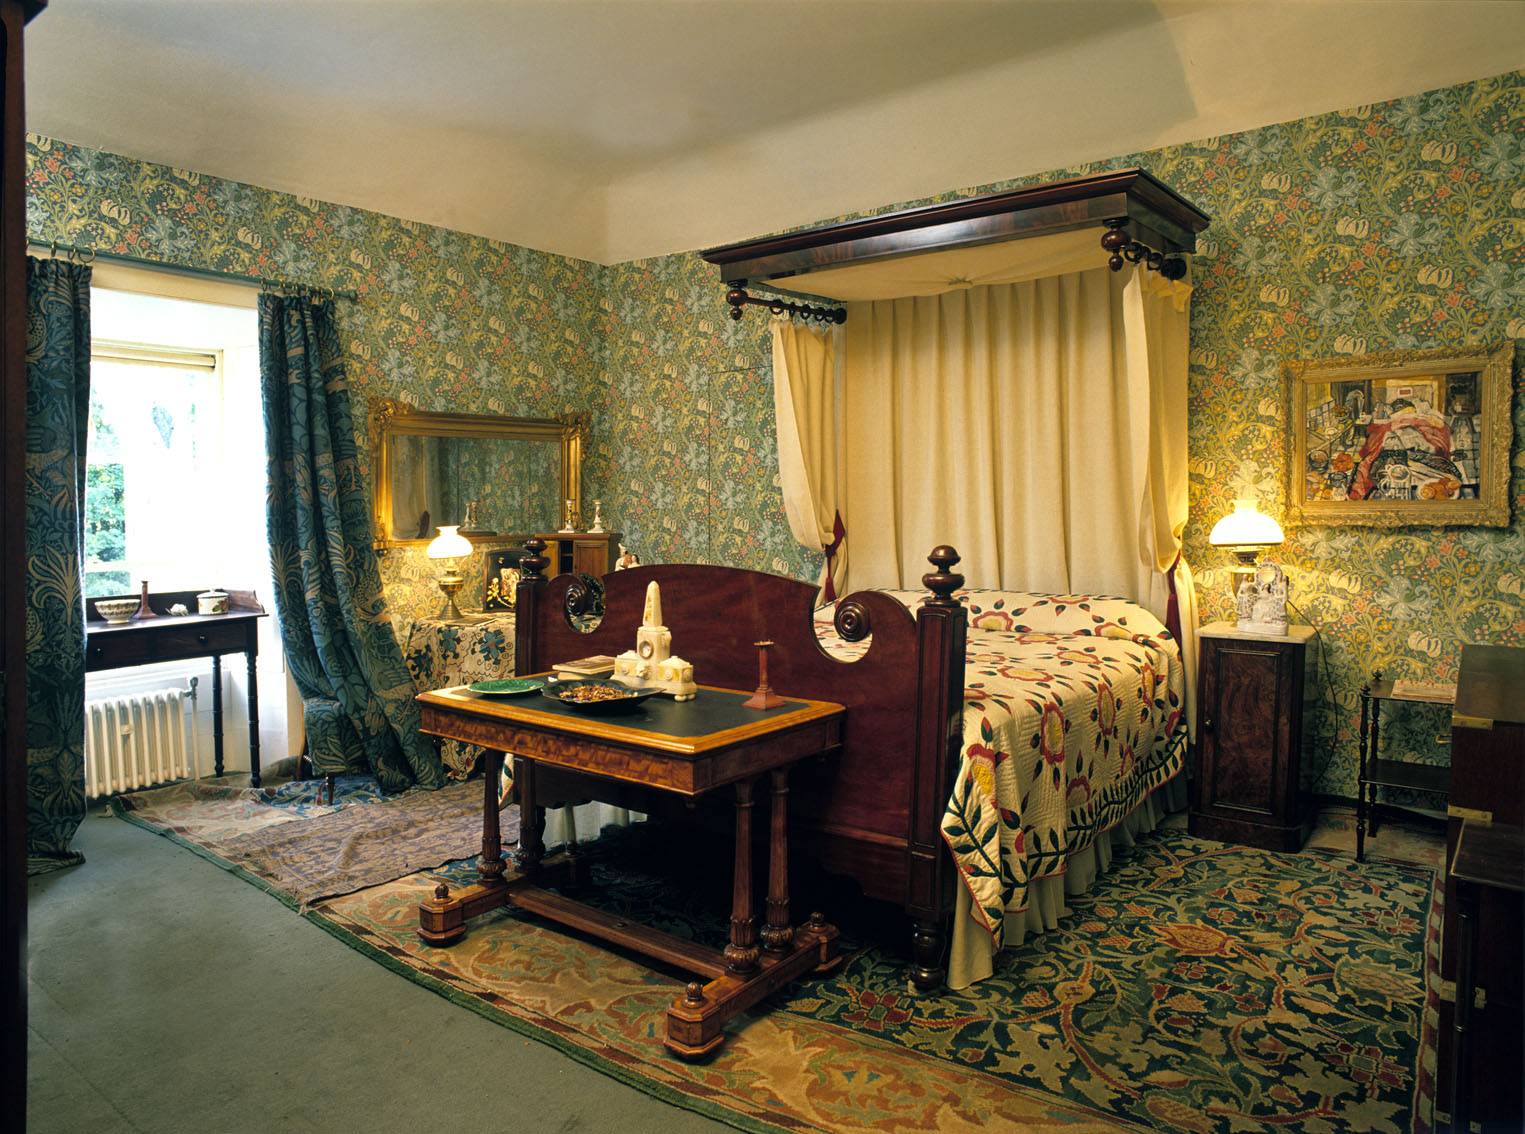 The Morris Bedroom. OPW.